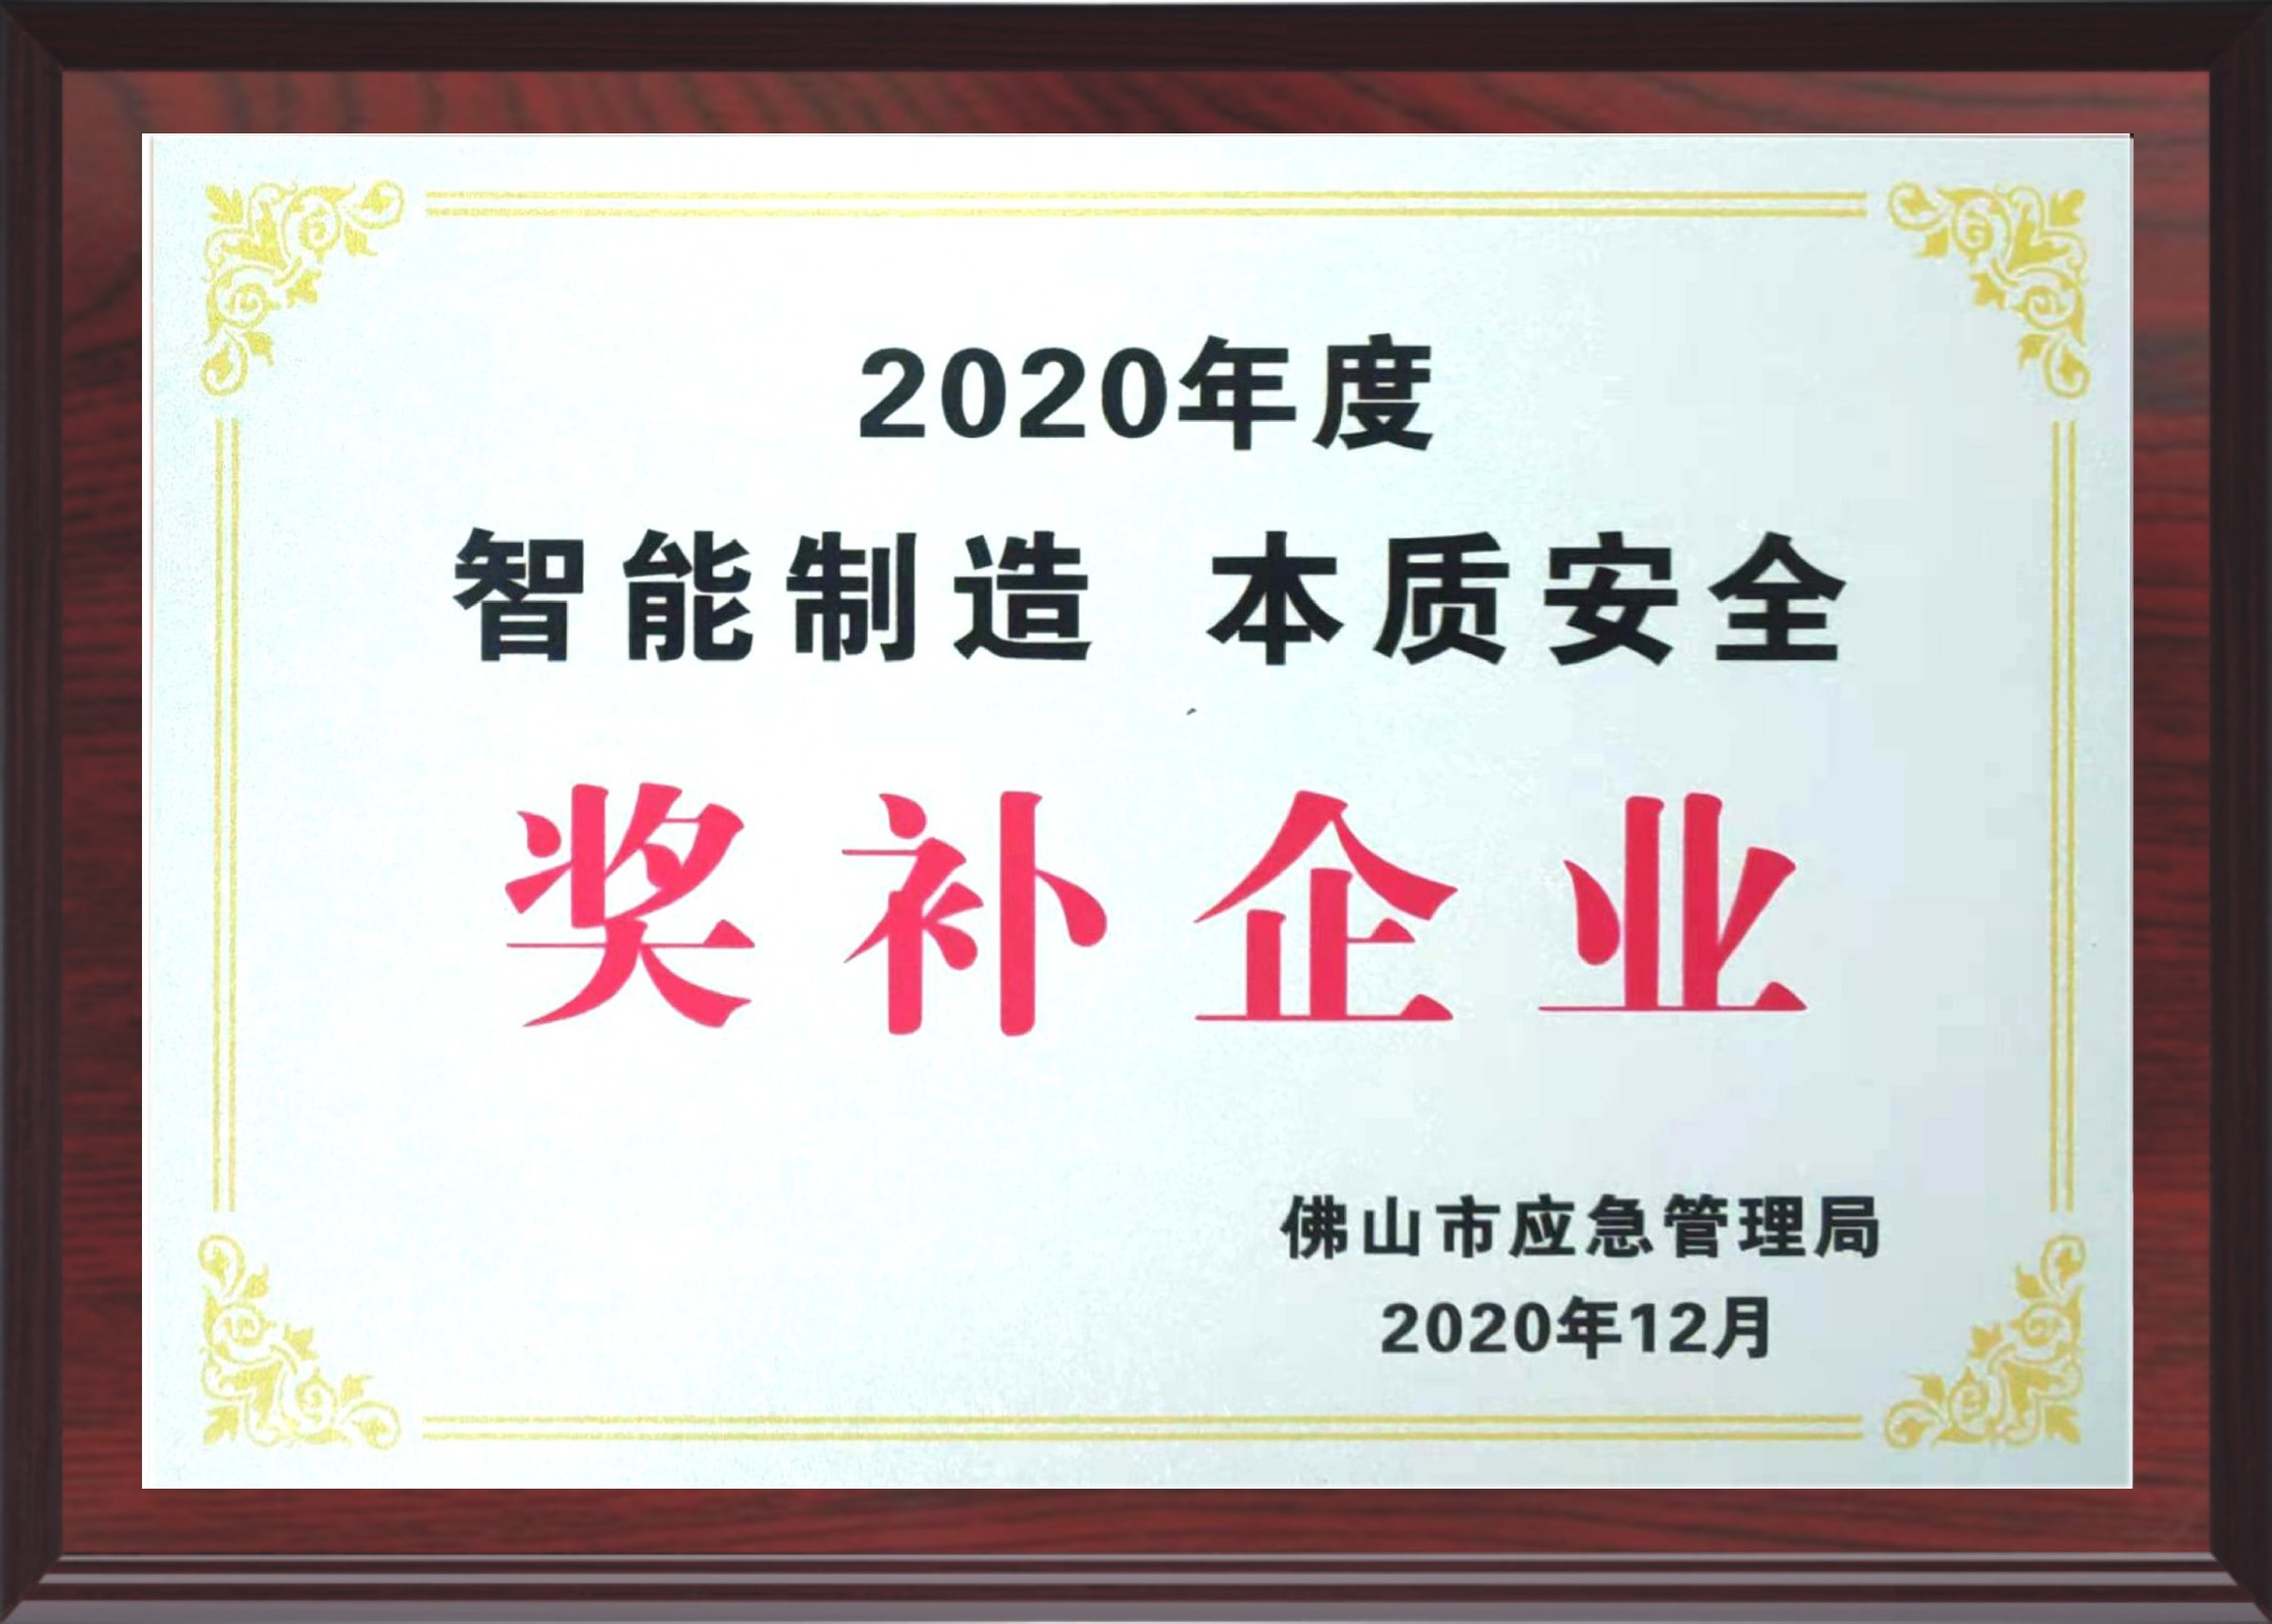 2020 Award supplement enterprise